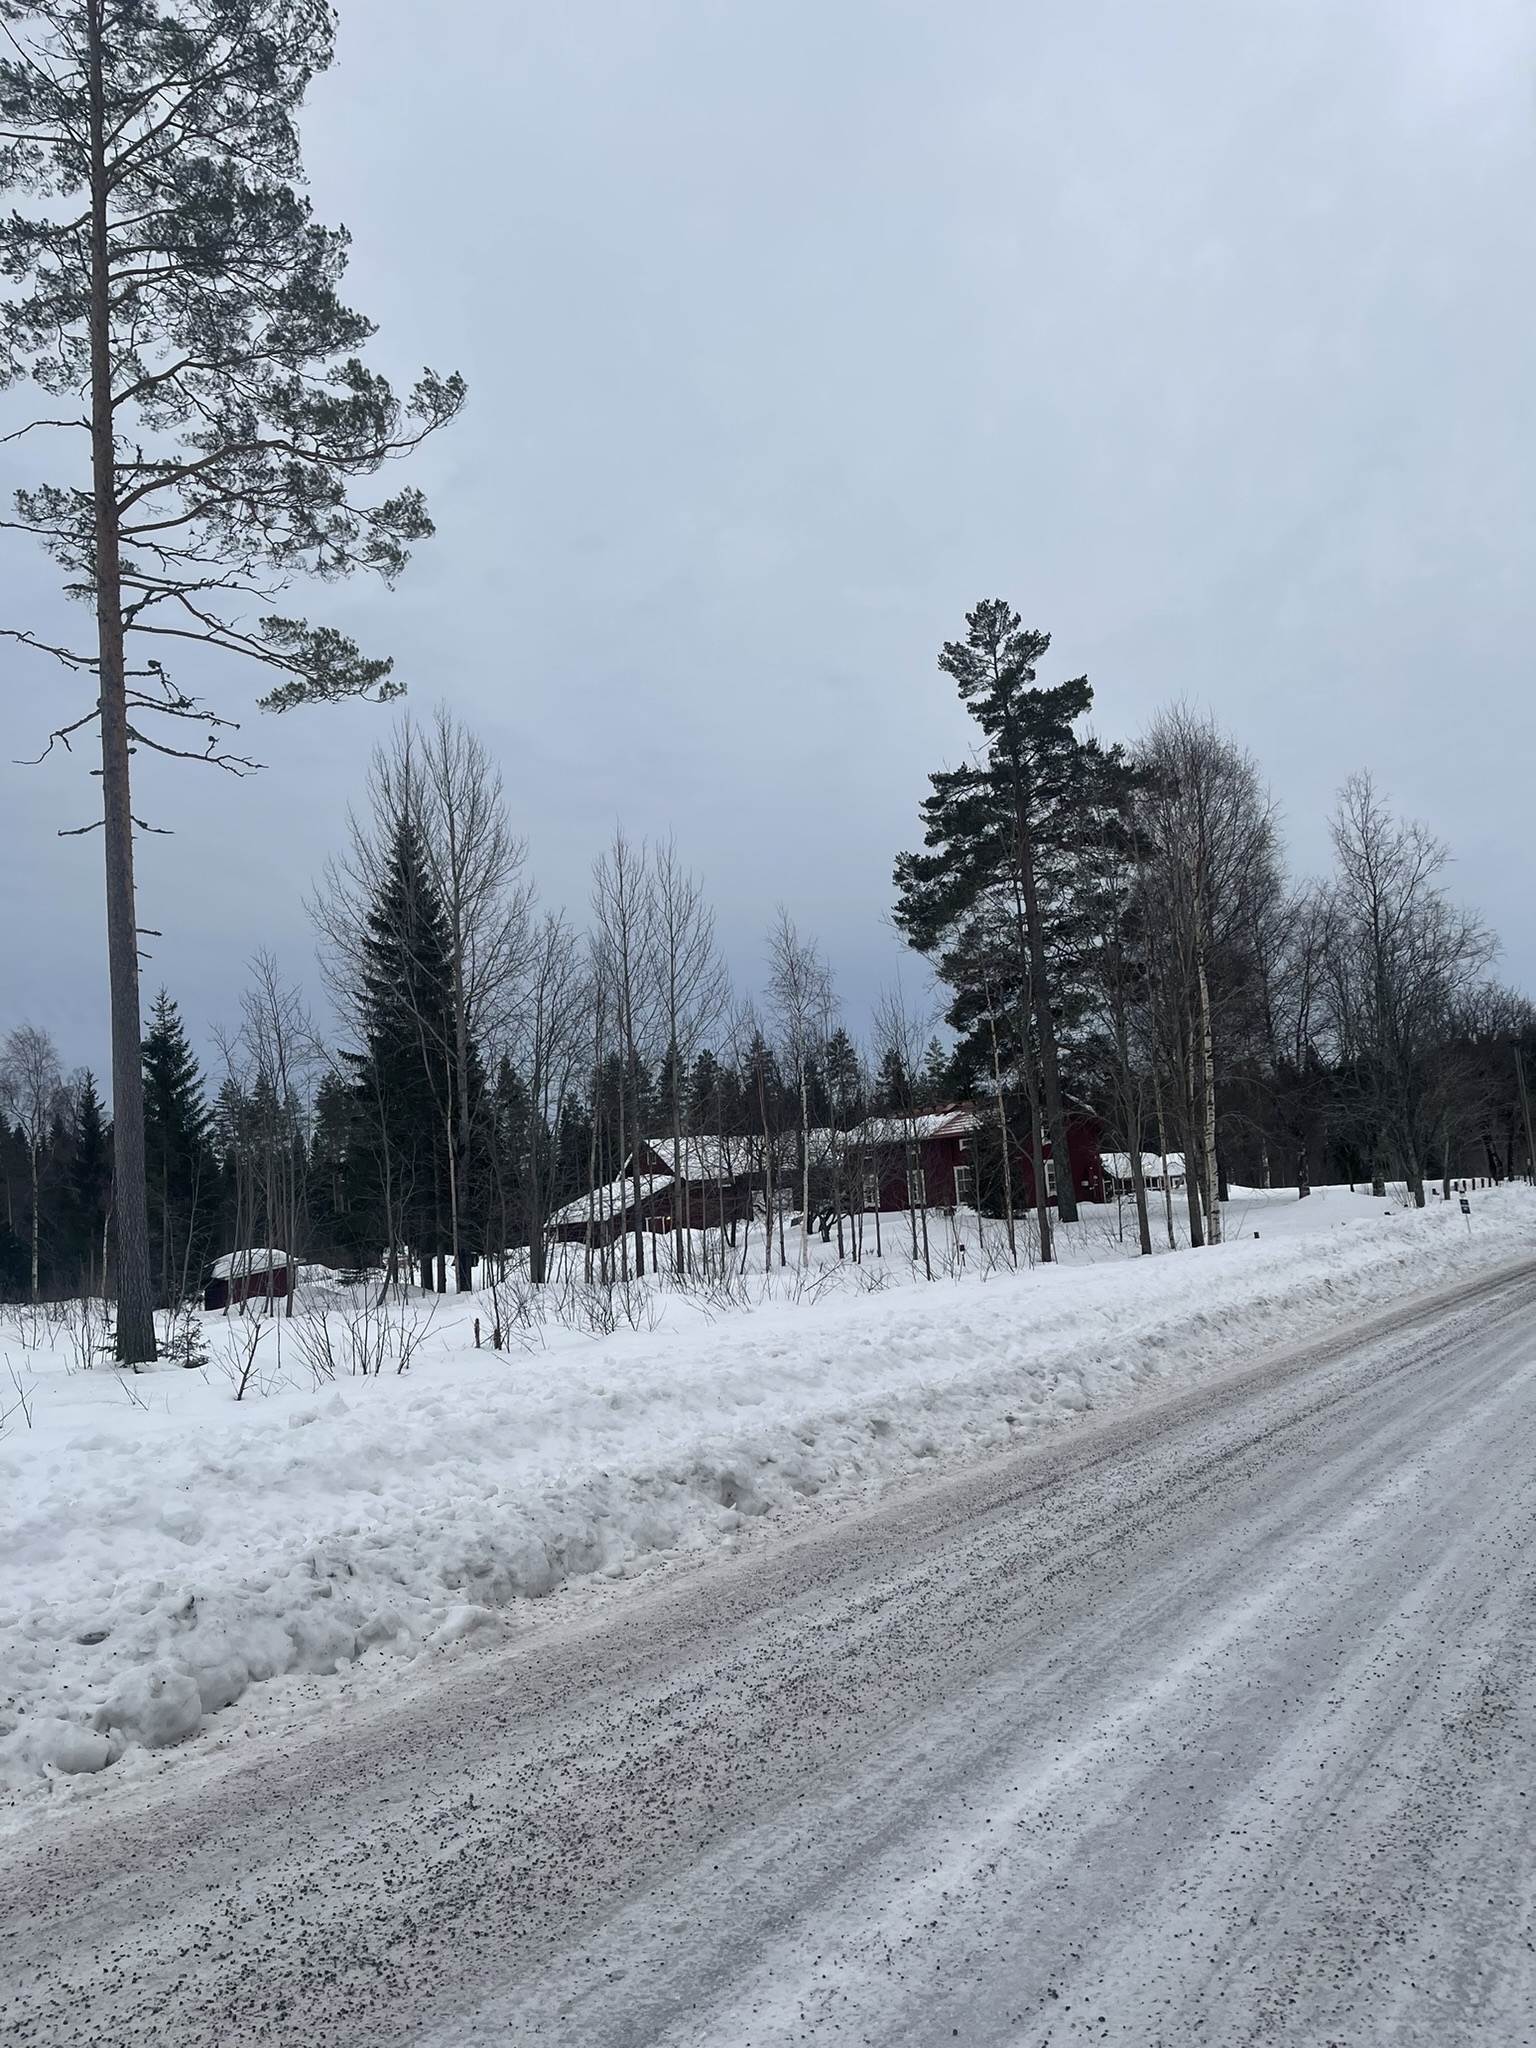  (Švédský sever byl velmi idylický. Dokud nesjedete ze silnice a nemusíte se vydat na túru do hlubokého lesa.